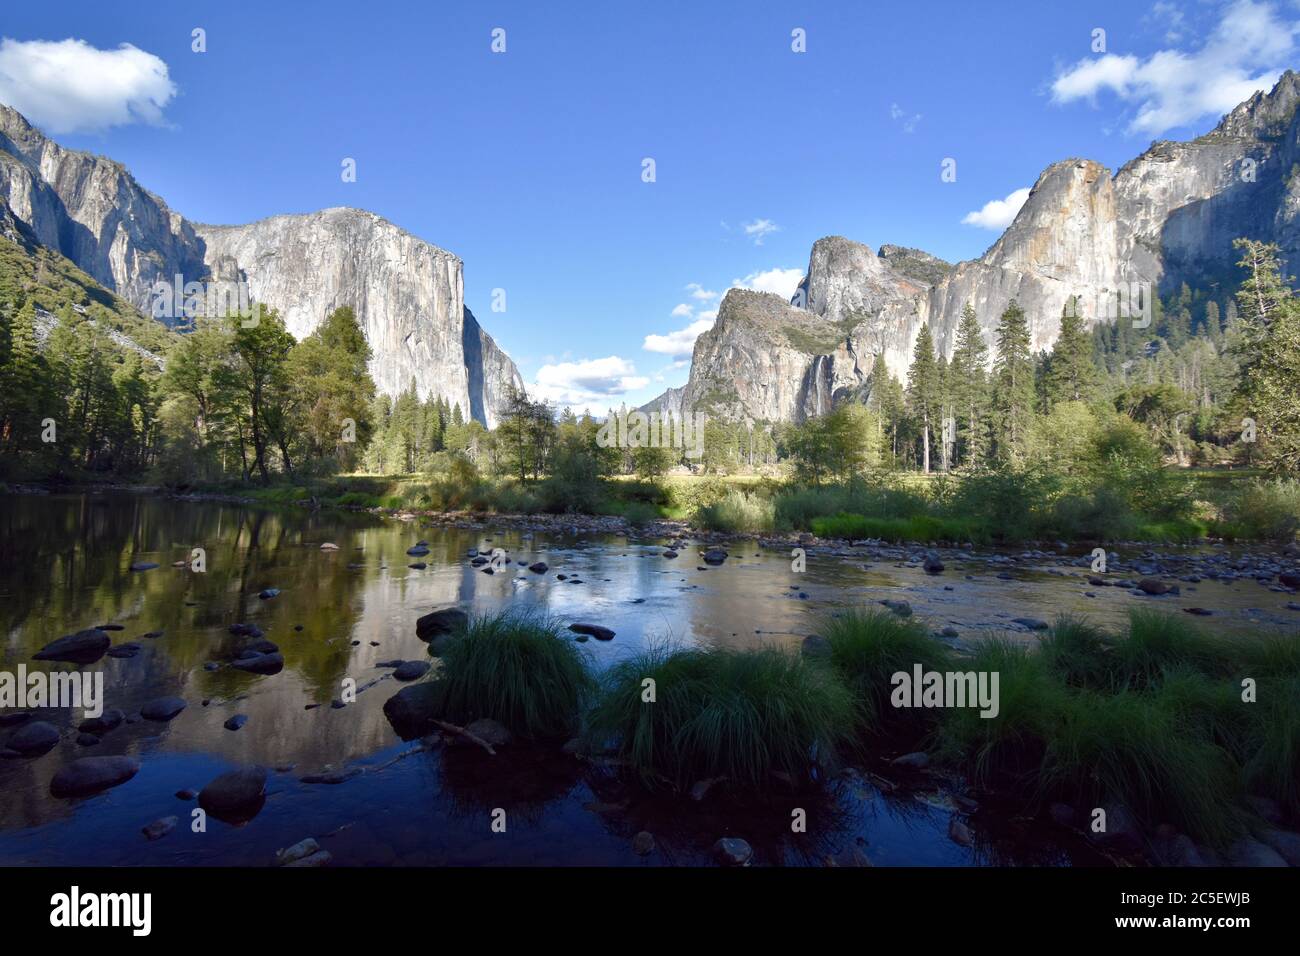 Valley View Point im Yosemite National Park, Kalifornien. Blick auf El Capitan, Bridal Veil Falls, Cathedral Rocks und den Merced River. Stockfoto